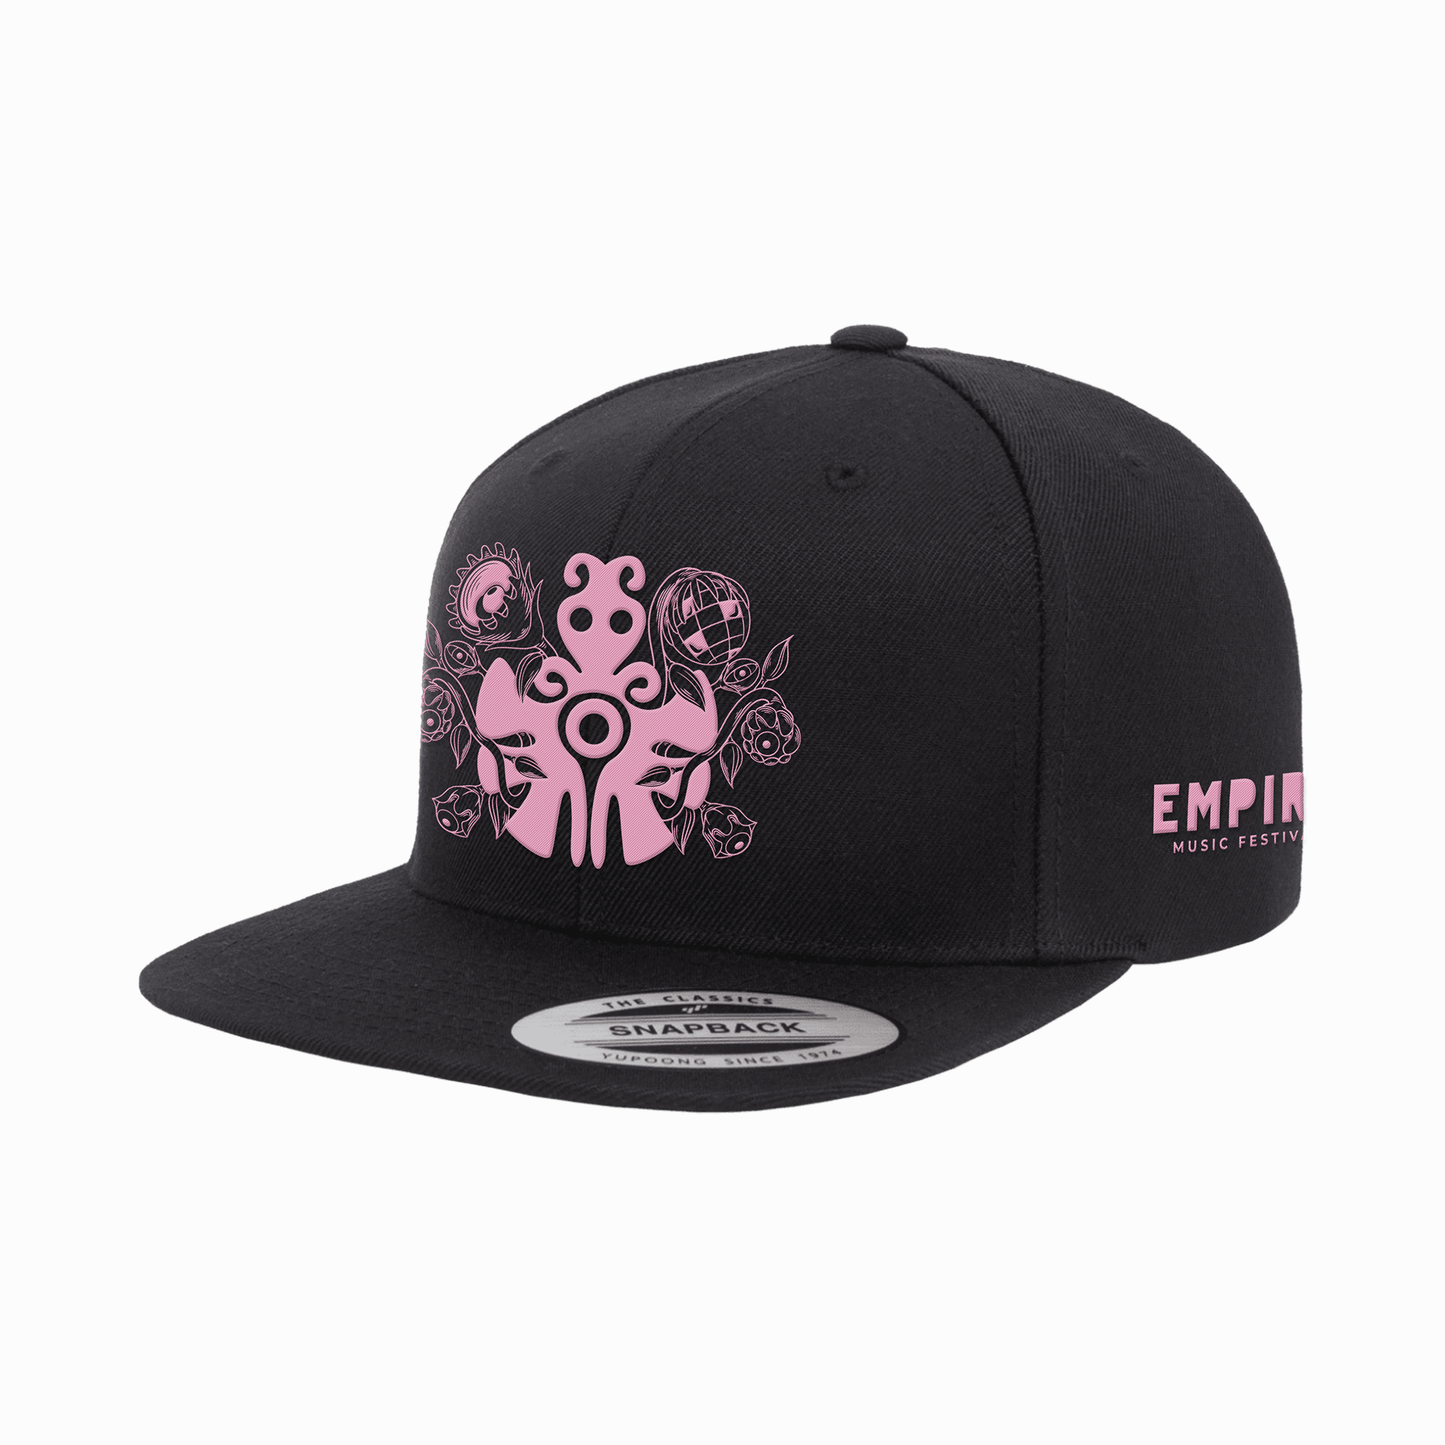 EMPIRE 8 PINK KOOKAY CAP